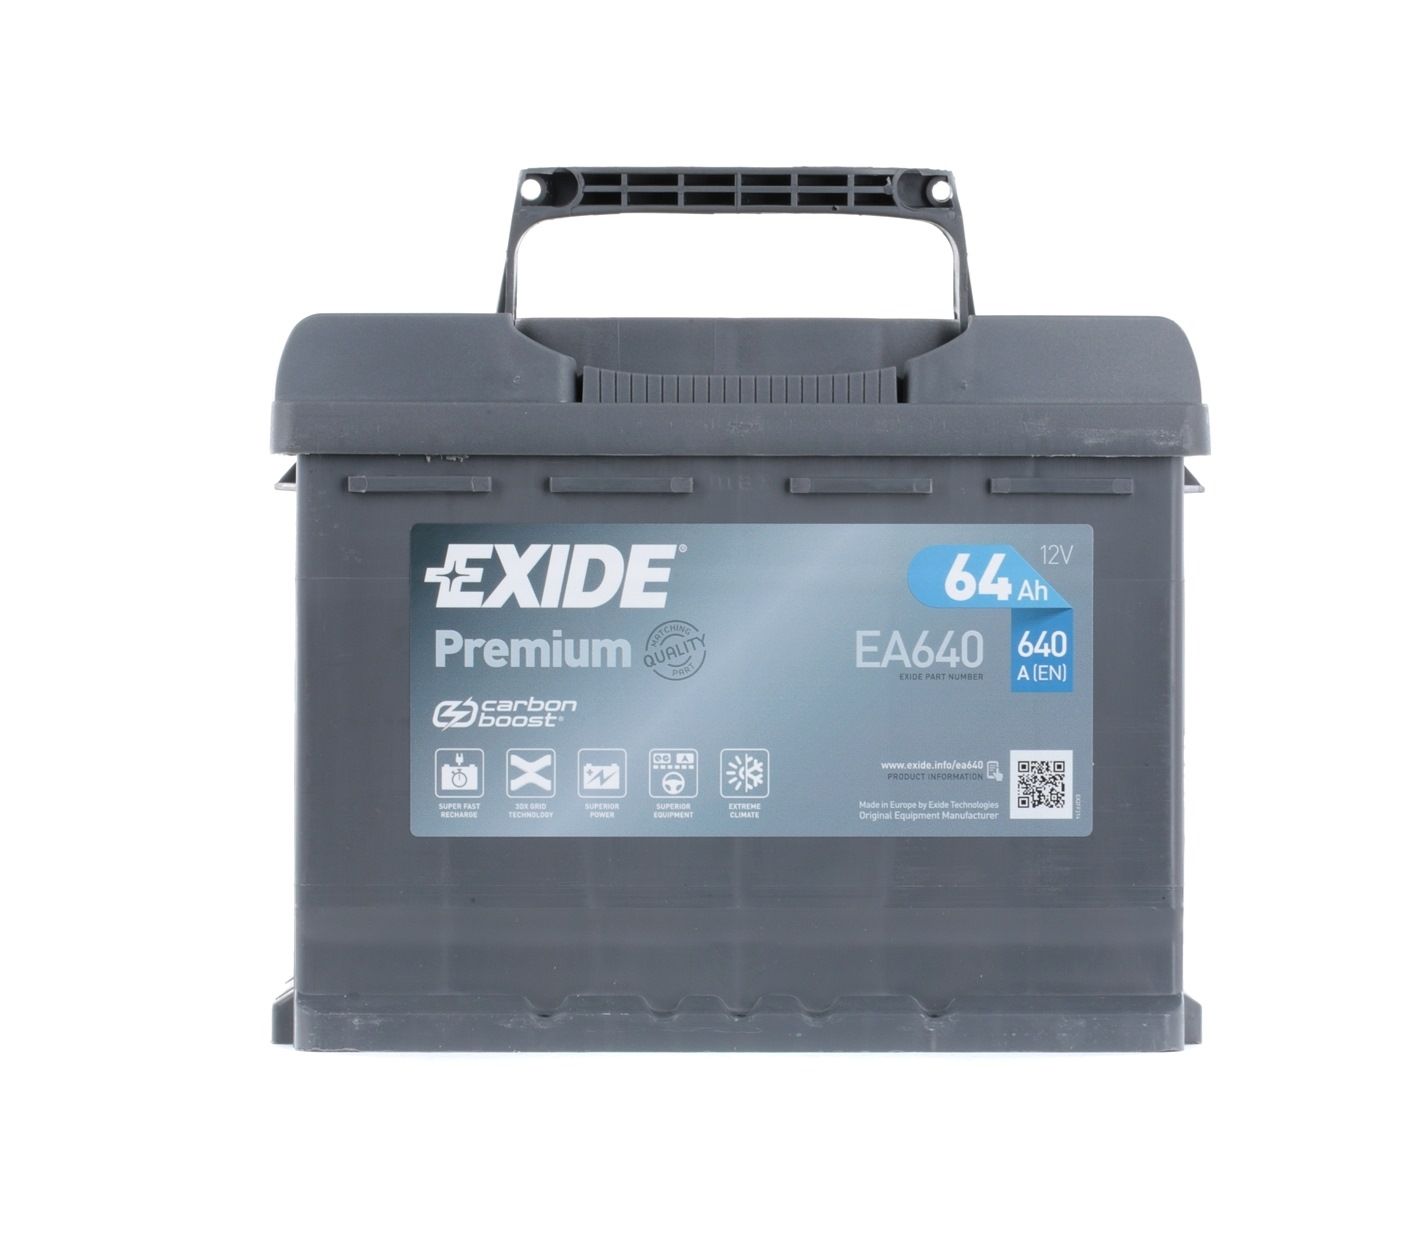 EXIDE PREMIUM EA640 Startovací baterie 12V 64Ah 640A B13 Olověná kyselinová baterie